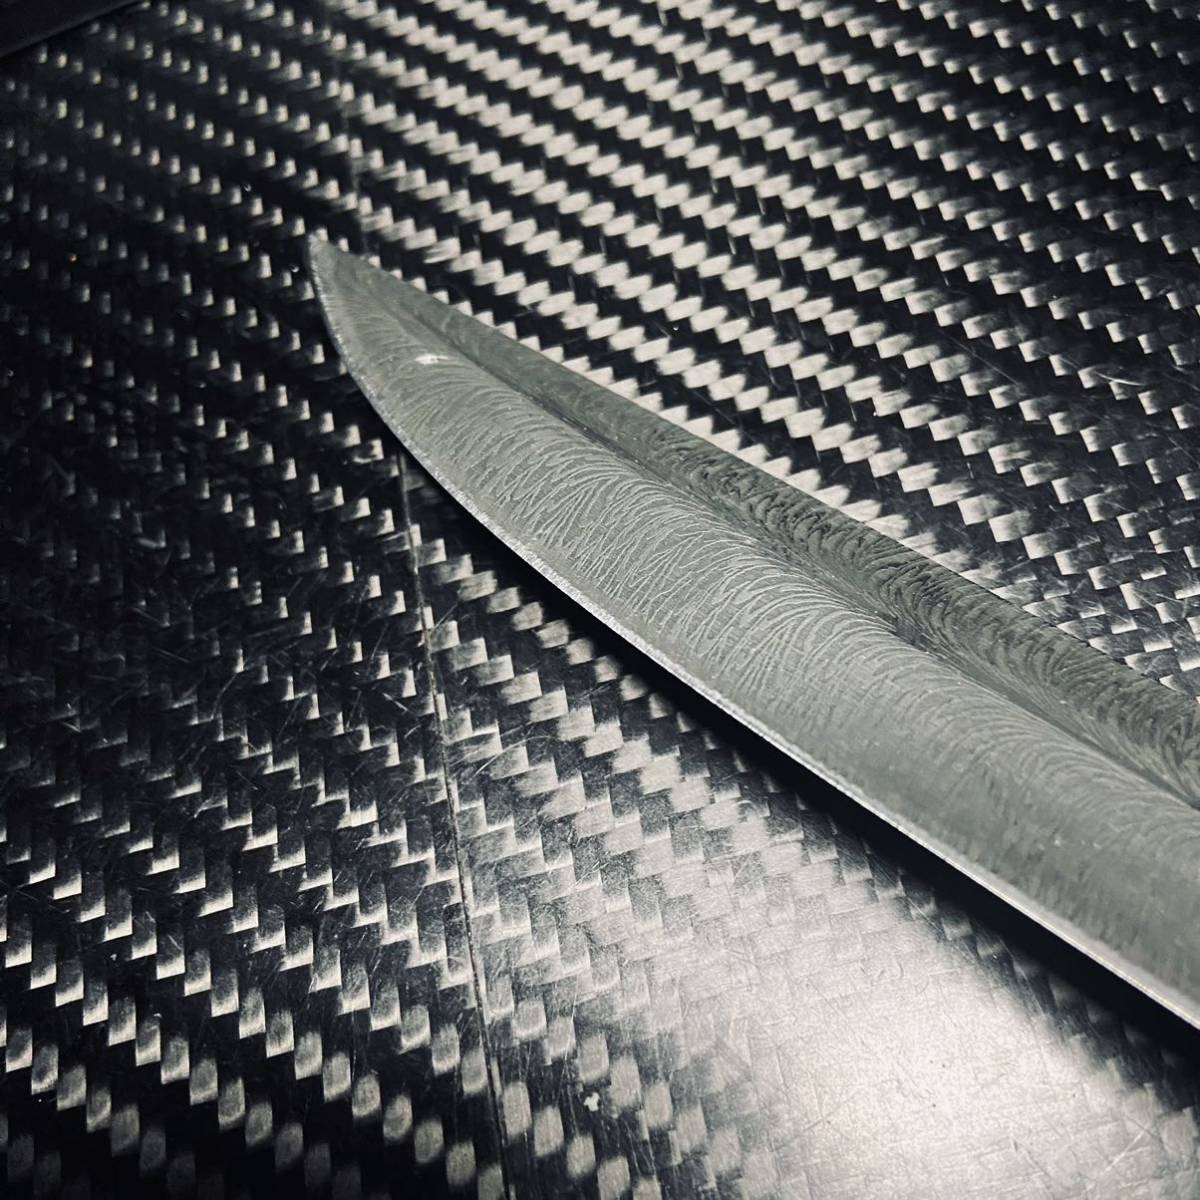 高級短刀 超高品質 サバイバルナイフ 鋼製 薪割り 專用シース付き 和風ナイフ 和式短刀 鋼製 和式ナイフ アウトドア 143g 26cm_画像5